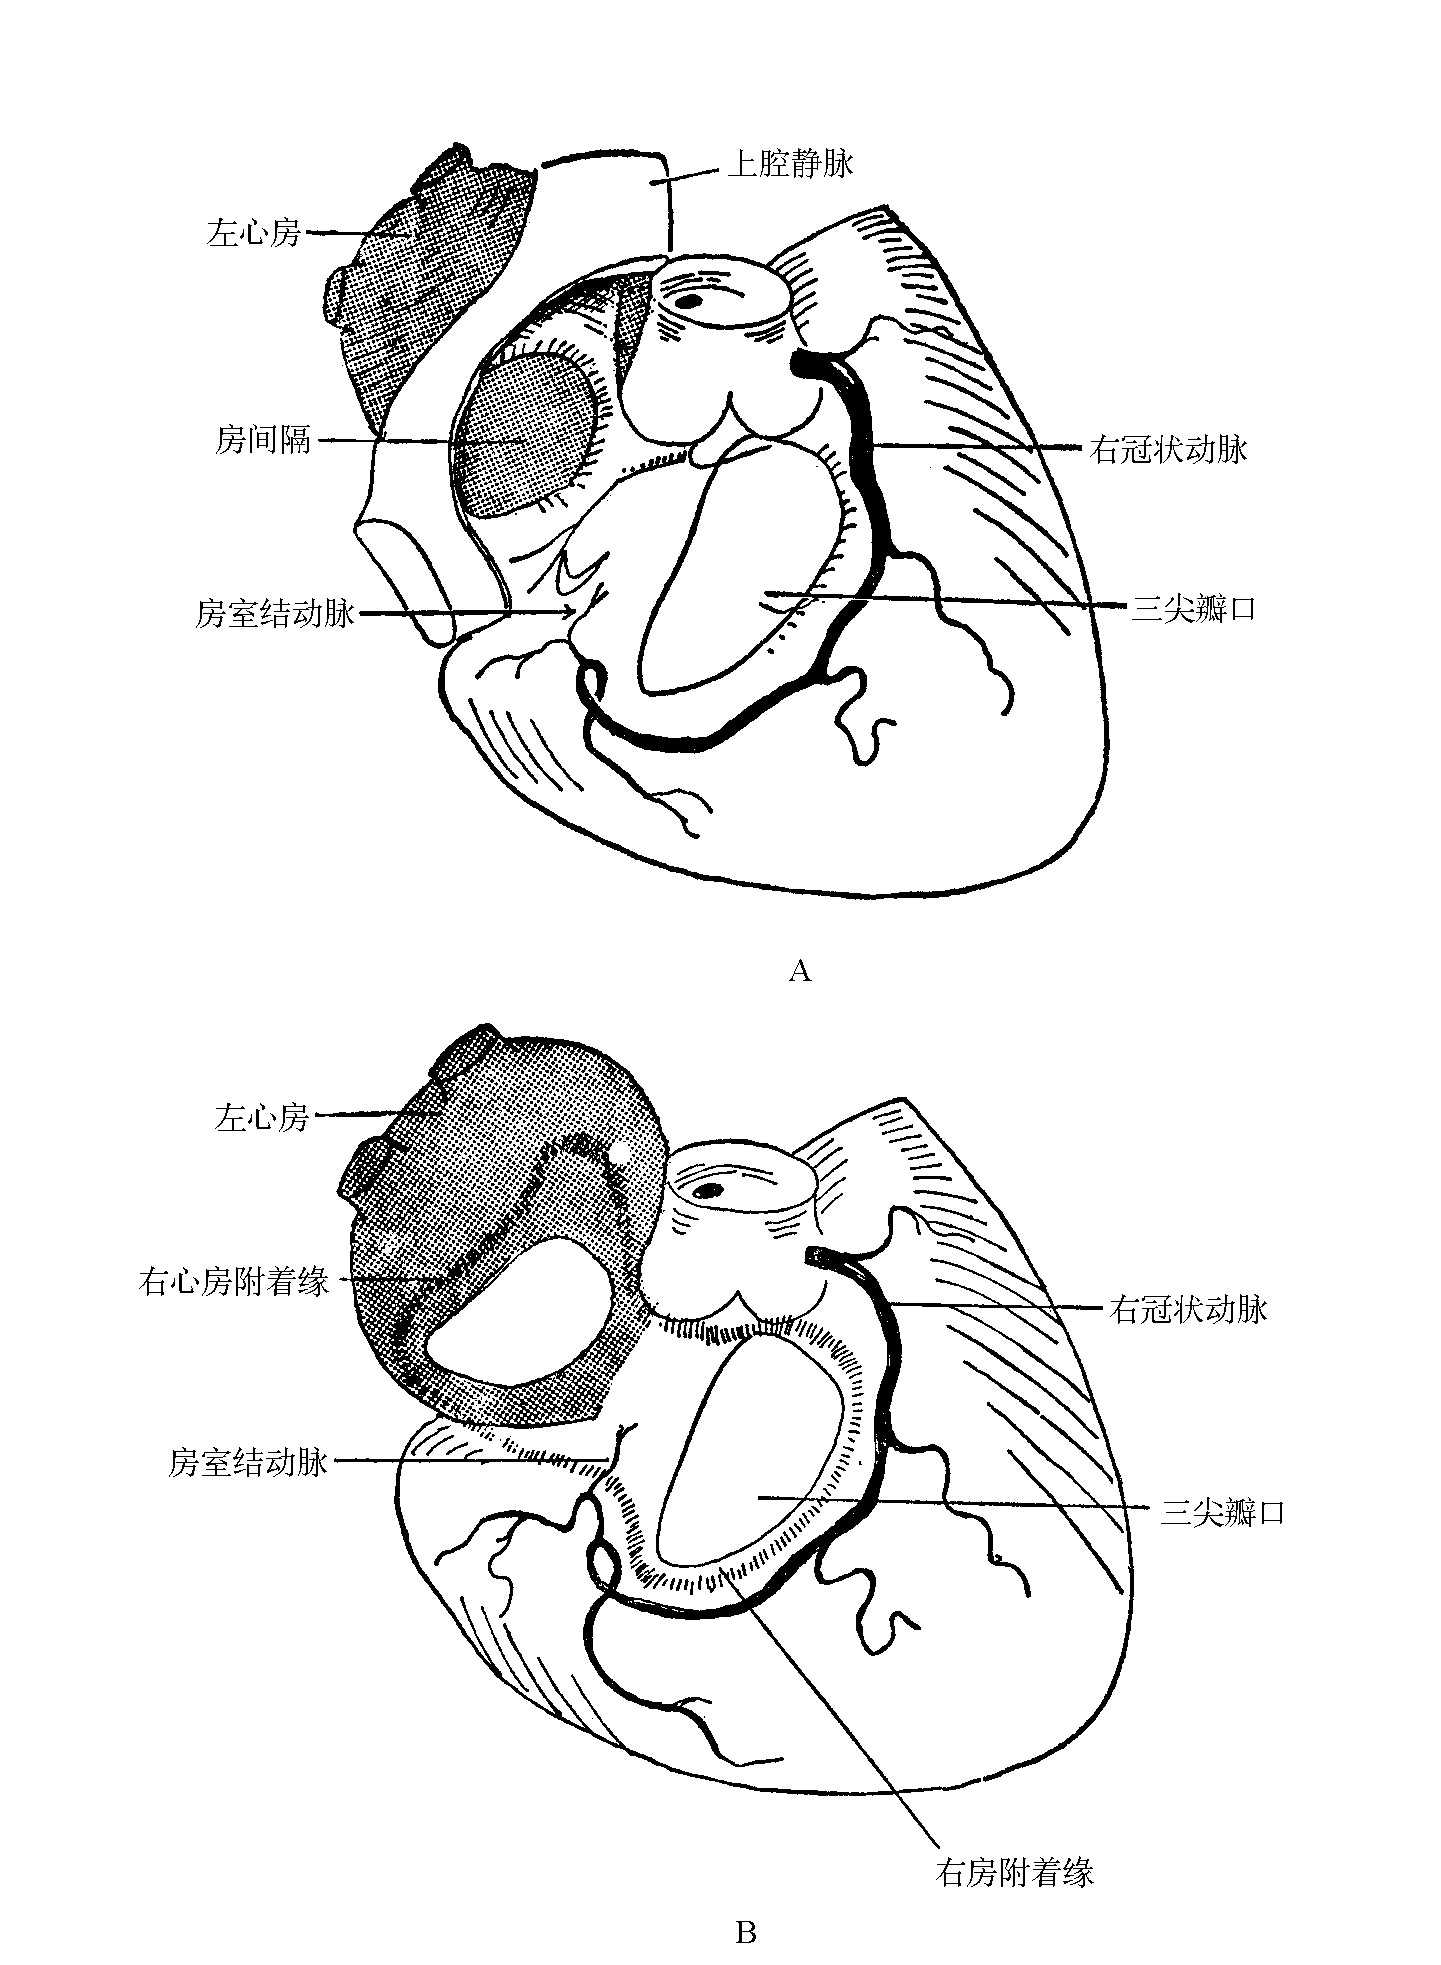 图7-3　左、右心房的关系